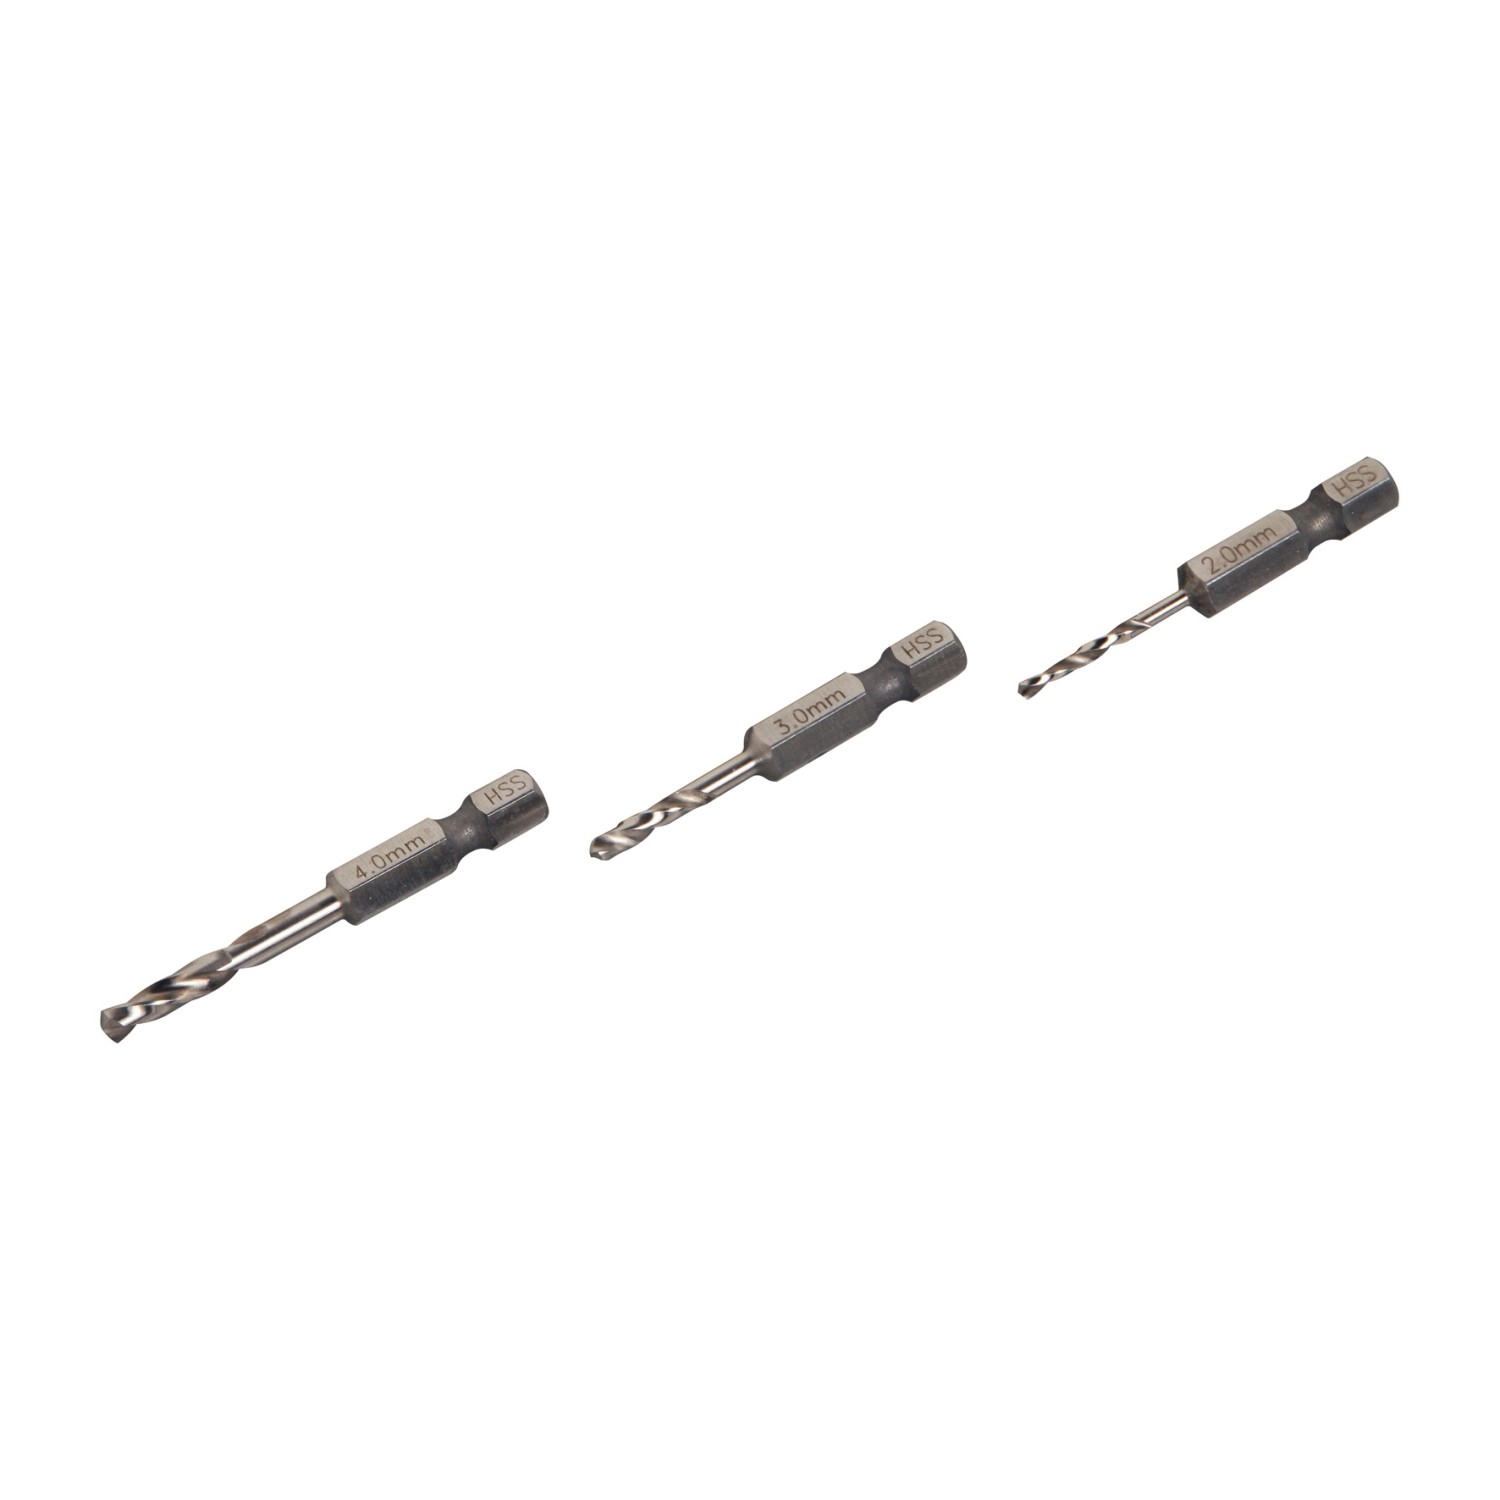 LUX Metall-Bohrersatz 6-Kant 2 mm, 3 mm und 4 mm